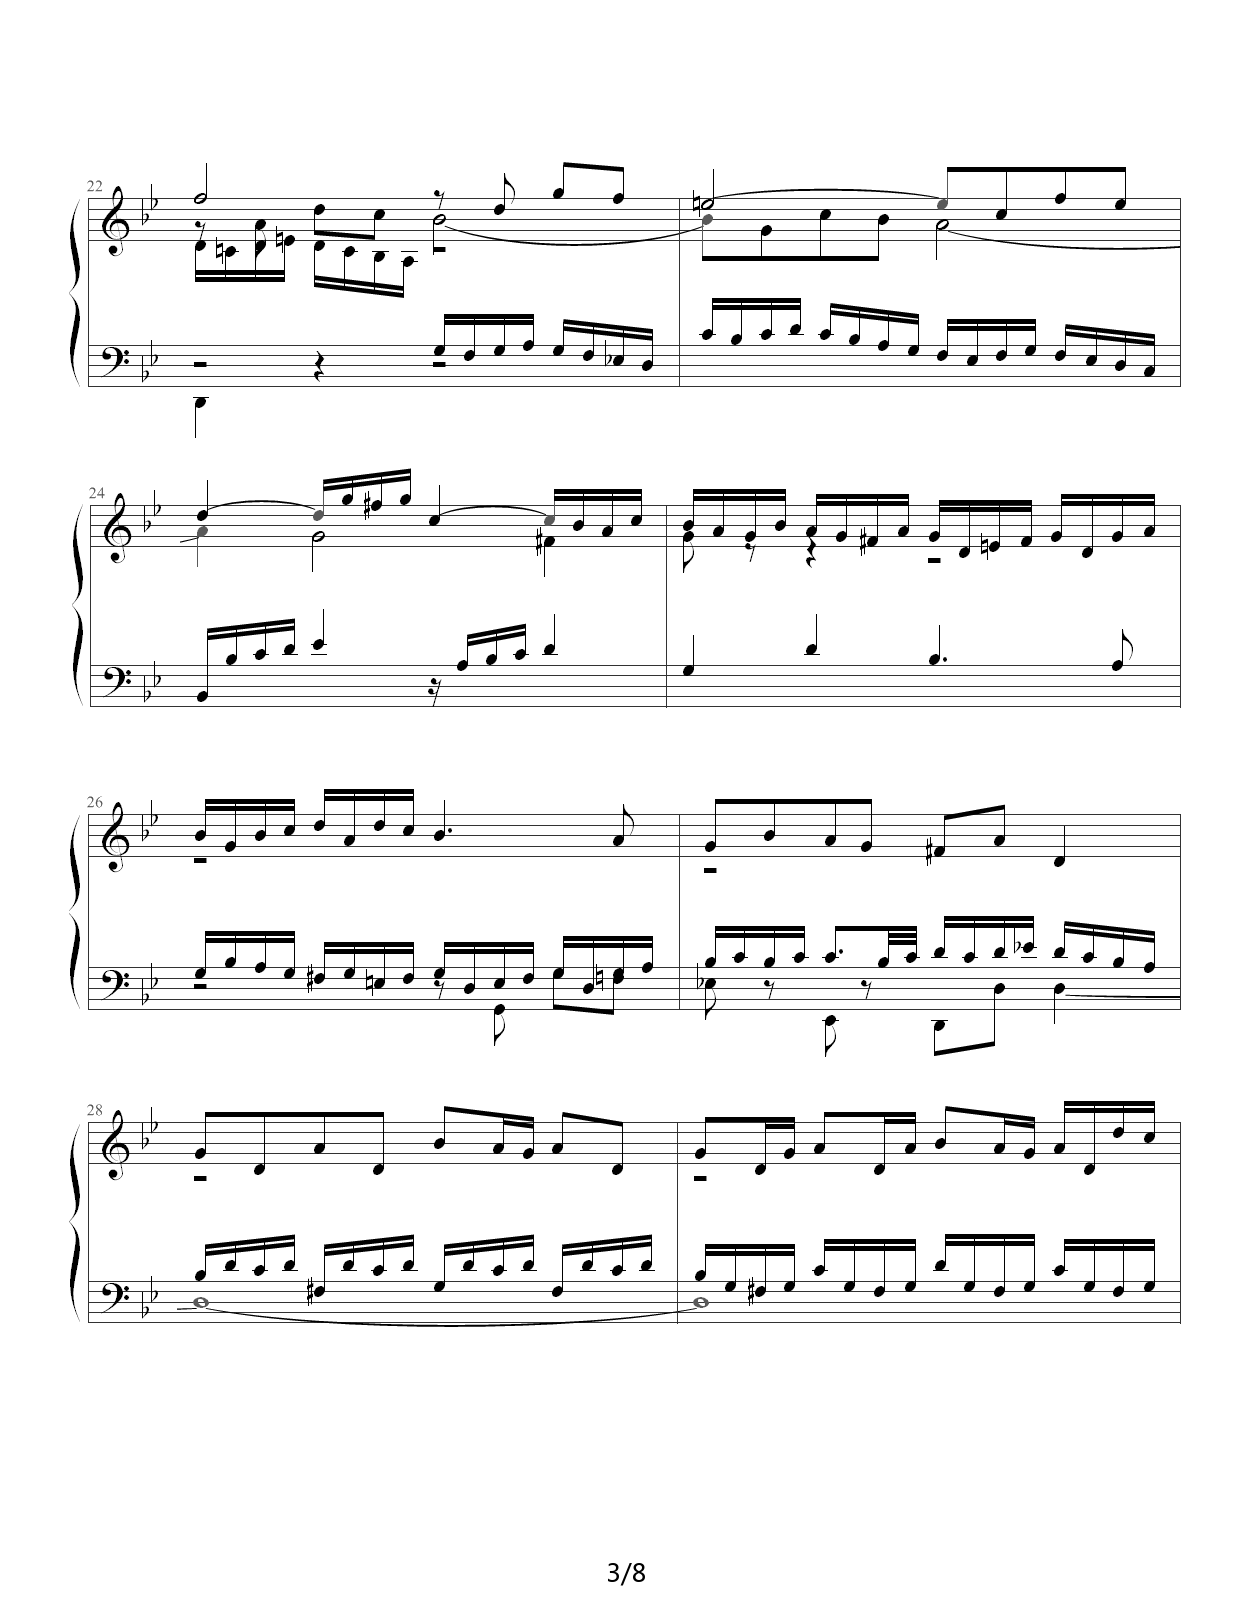 Fugue in G Minor钢琴谱|Fugue in G Minor最新钢琴谱|Fugue in G Minor钢琴谱下载